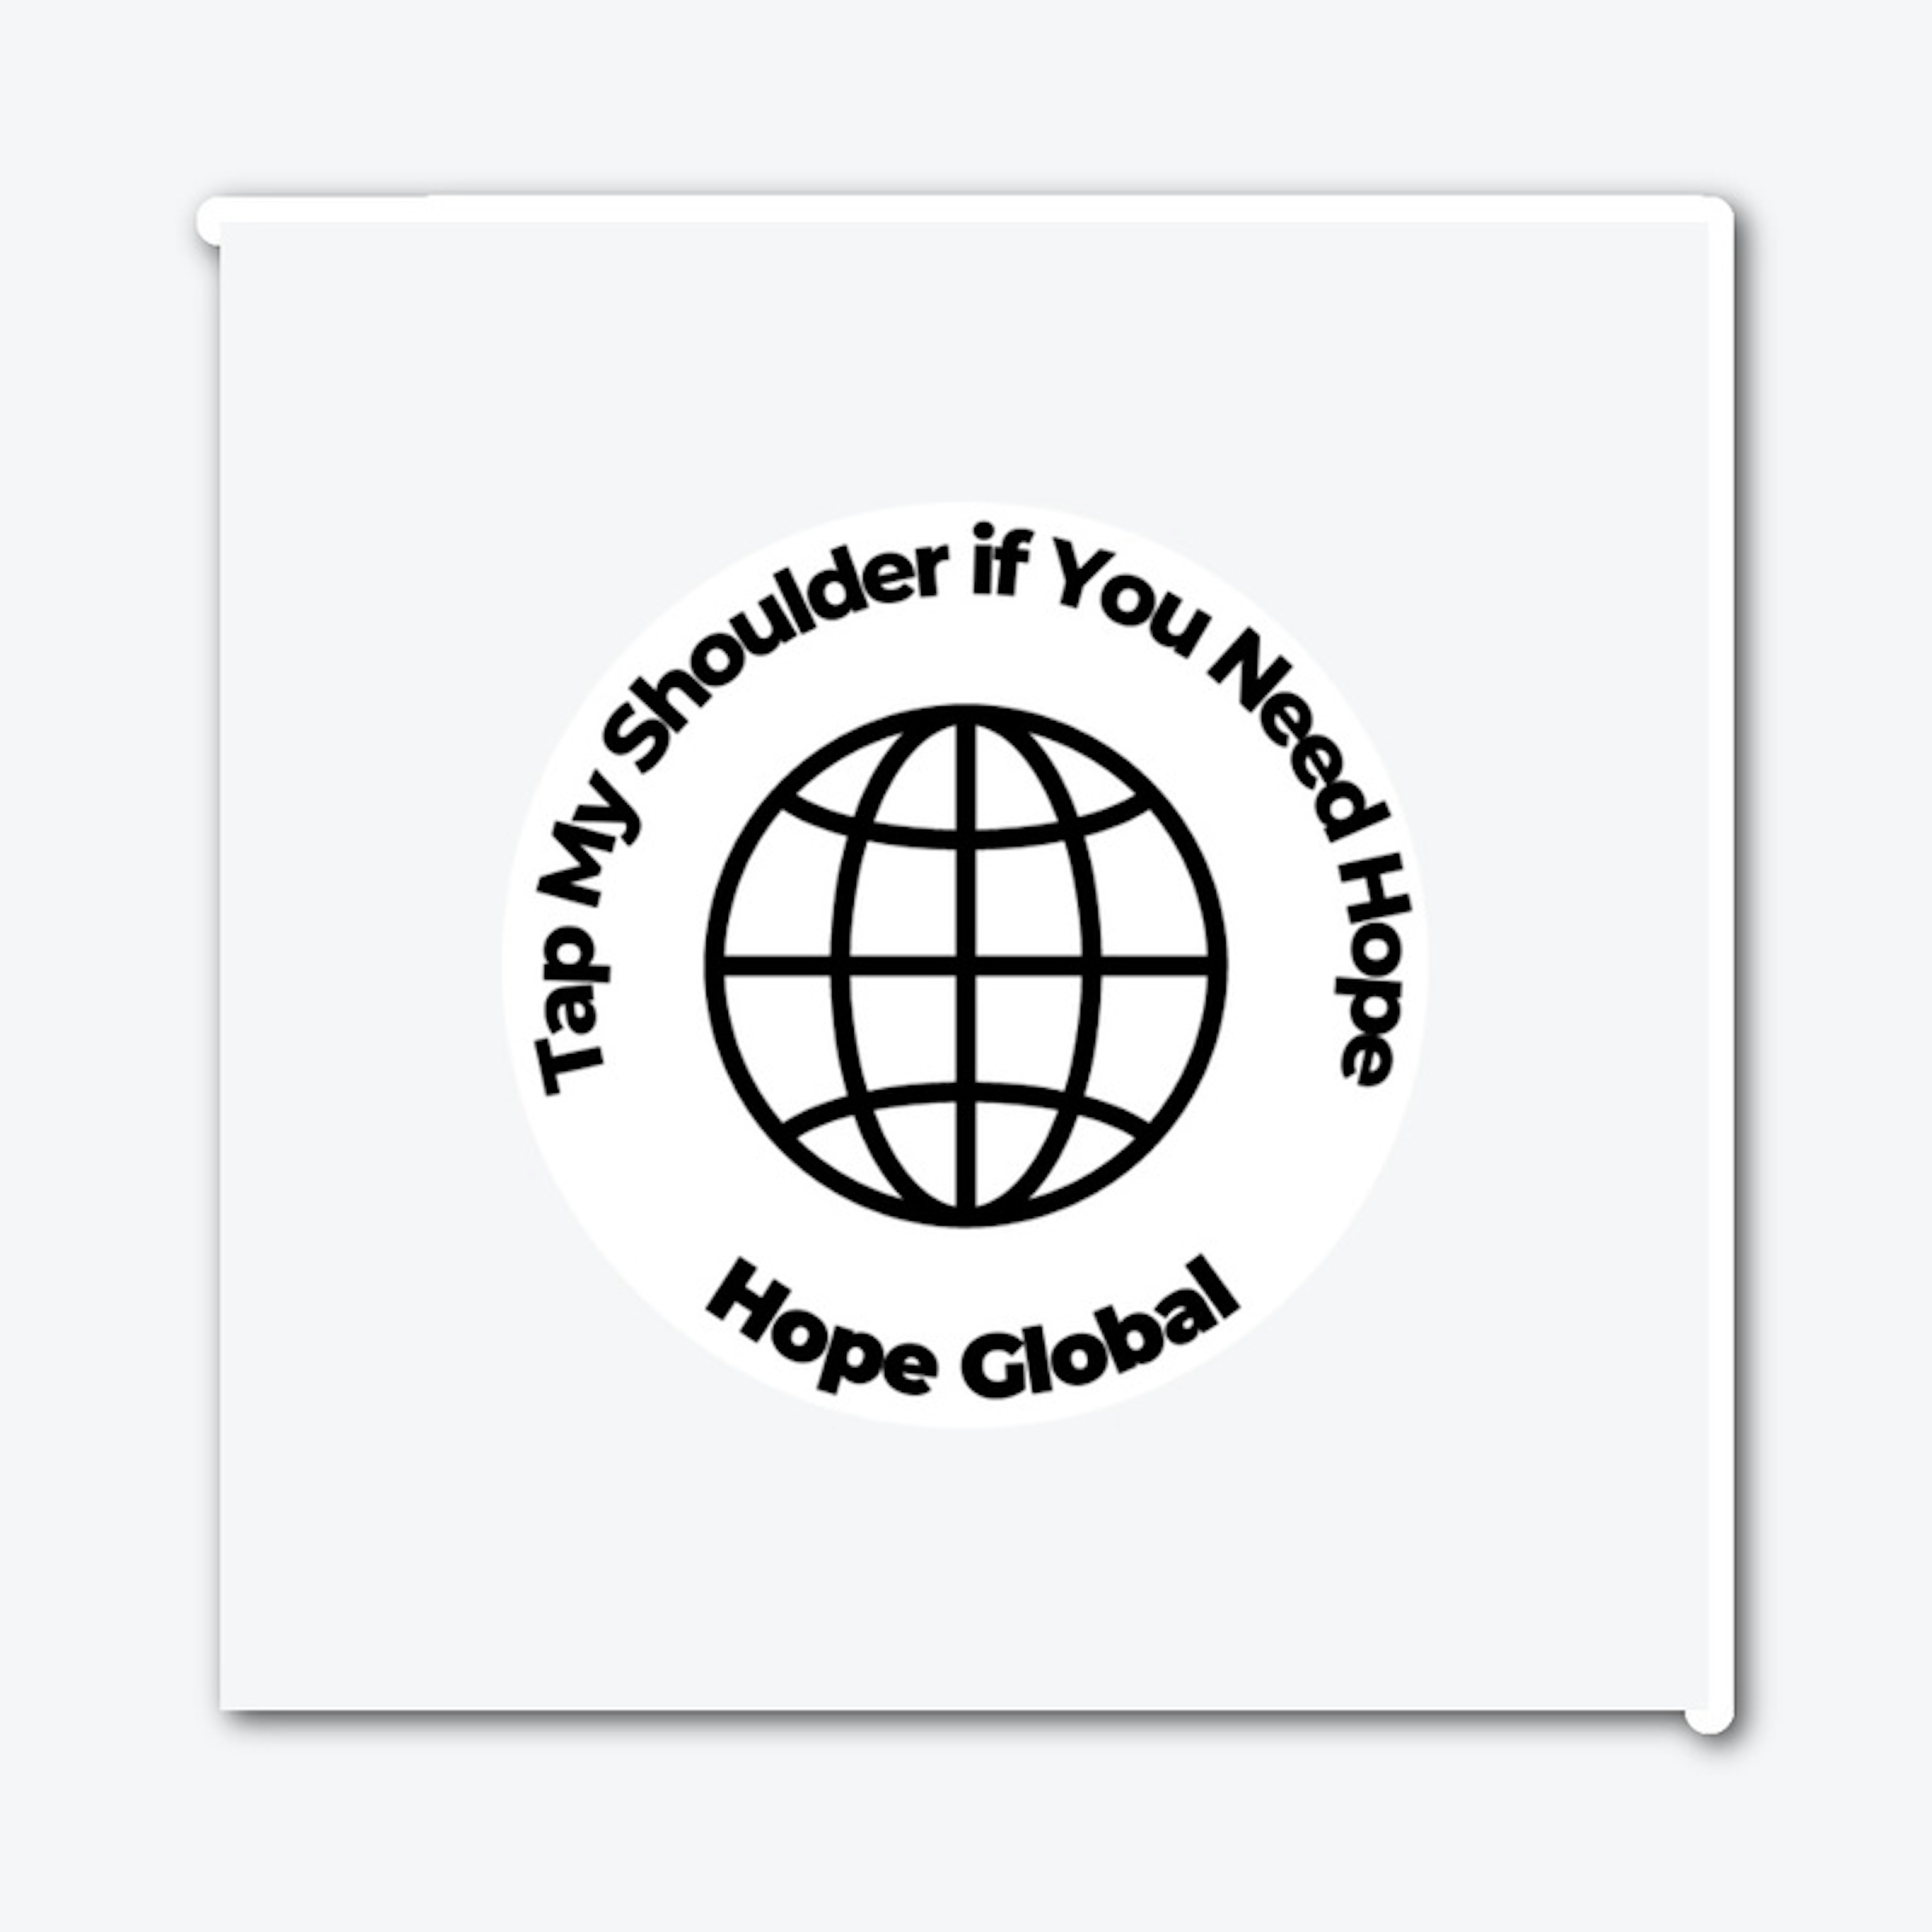 Hope Global Sticker